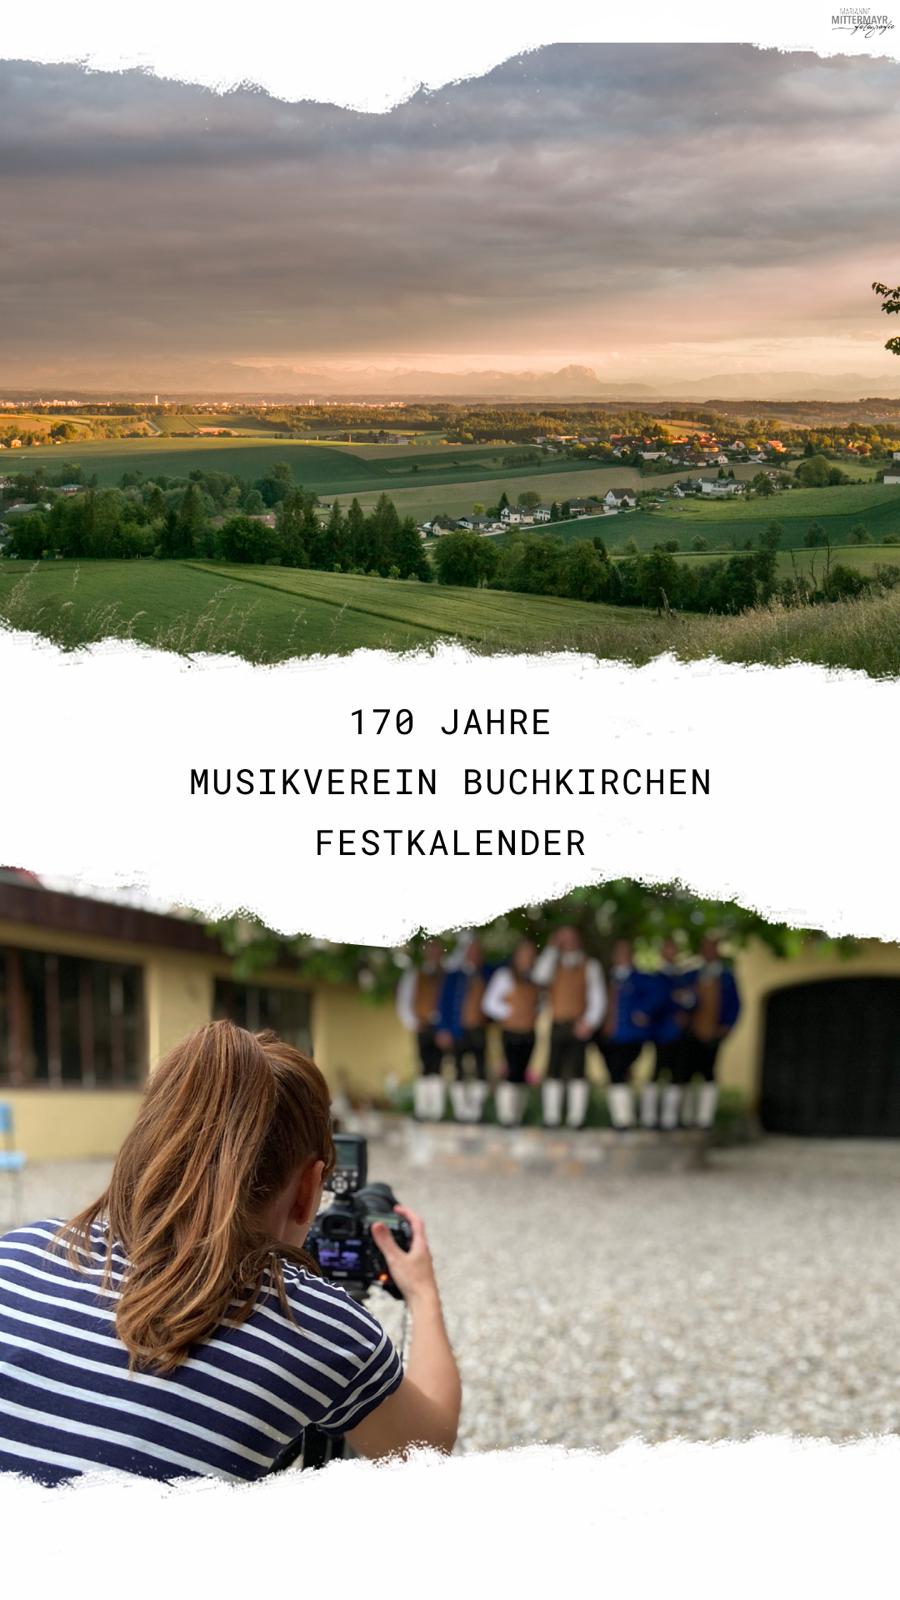 Festkalender 170 Jahre Musikverein Buchkirchen